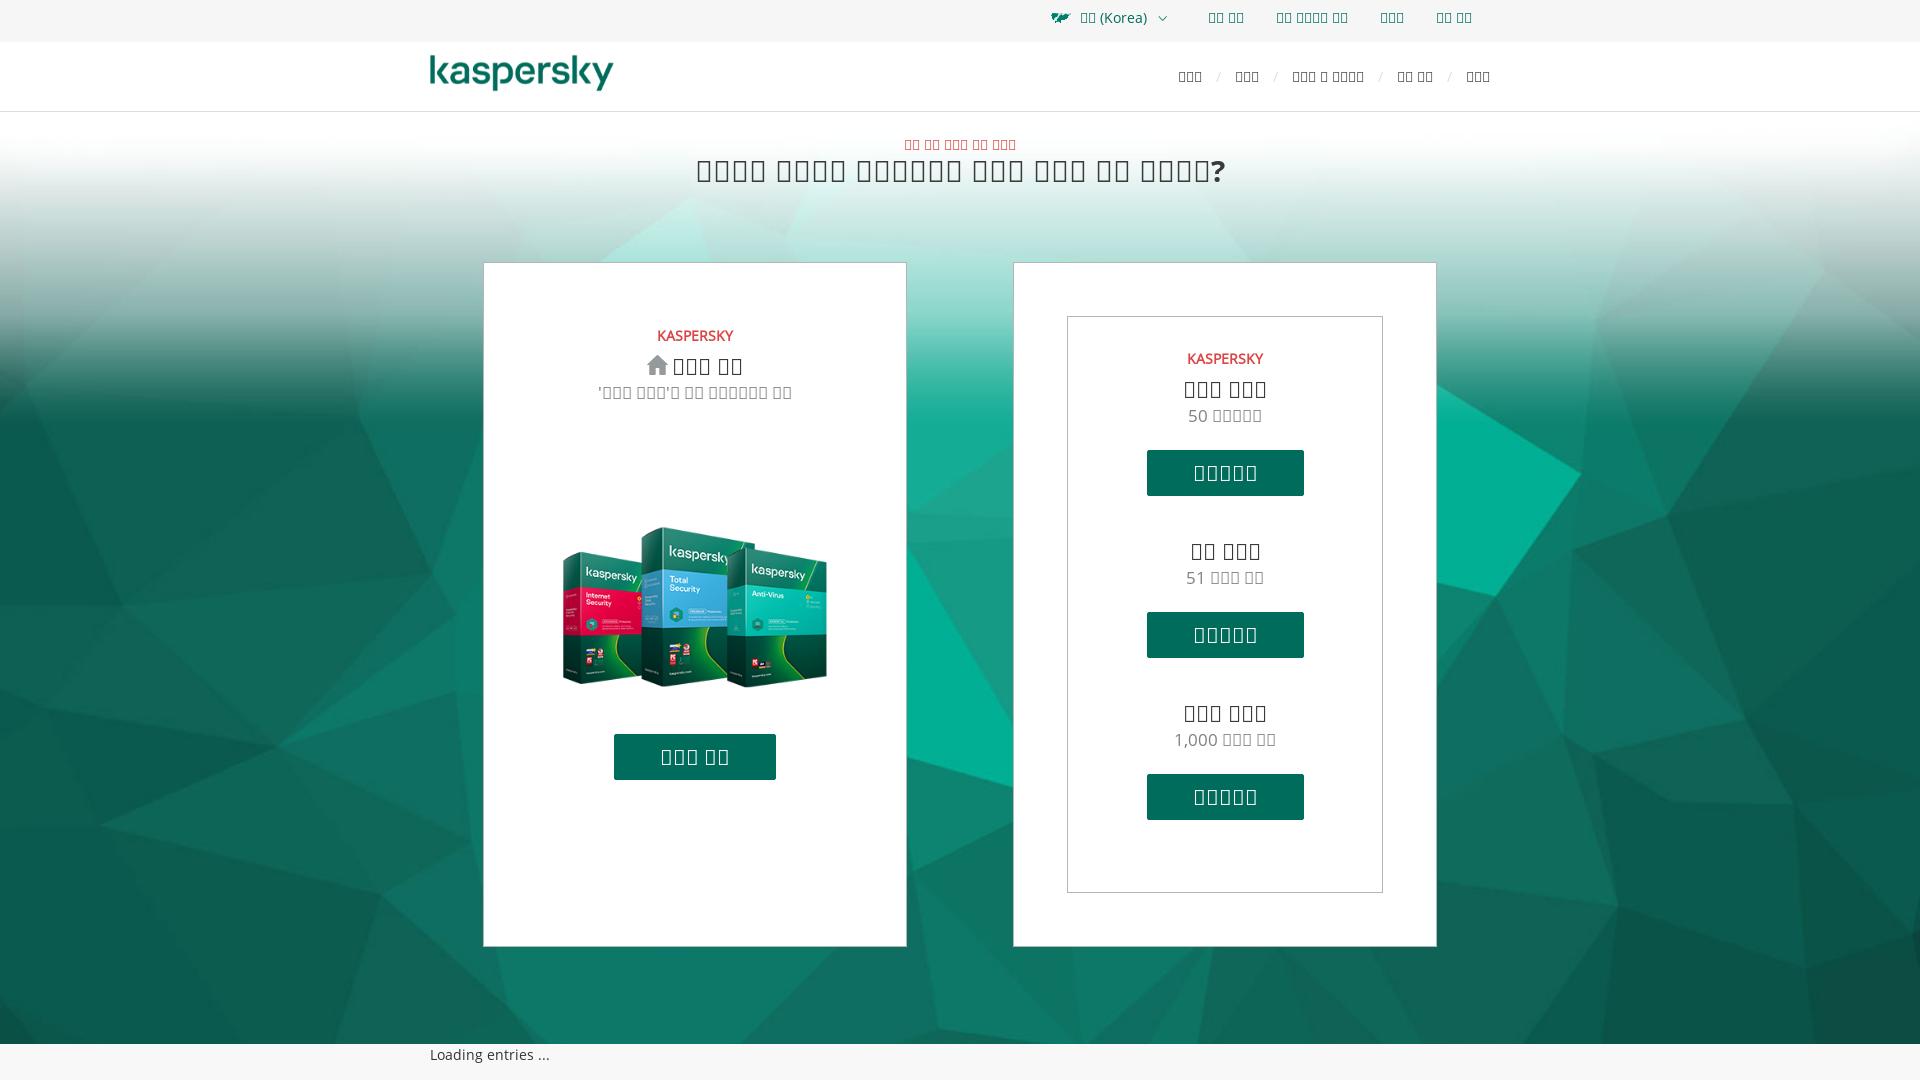 Website User Bewertung zu www.kaspersky.co.kr